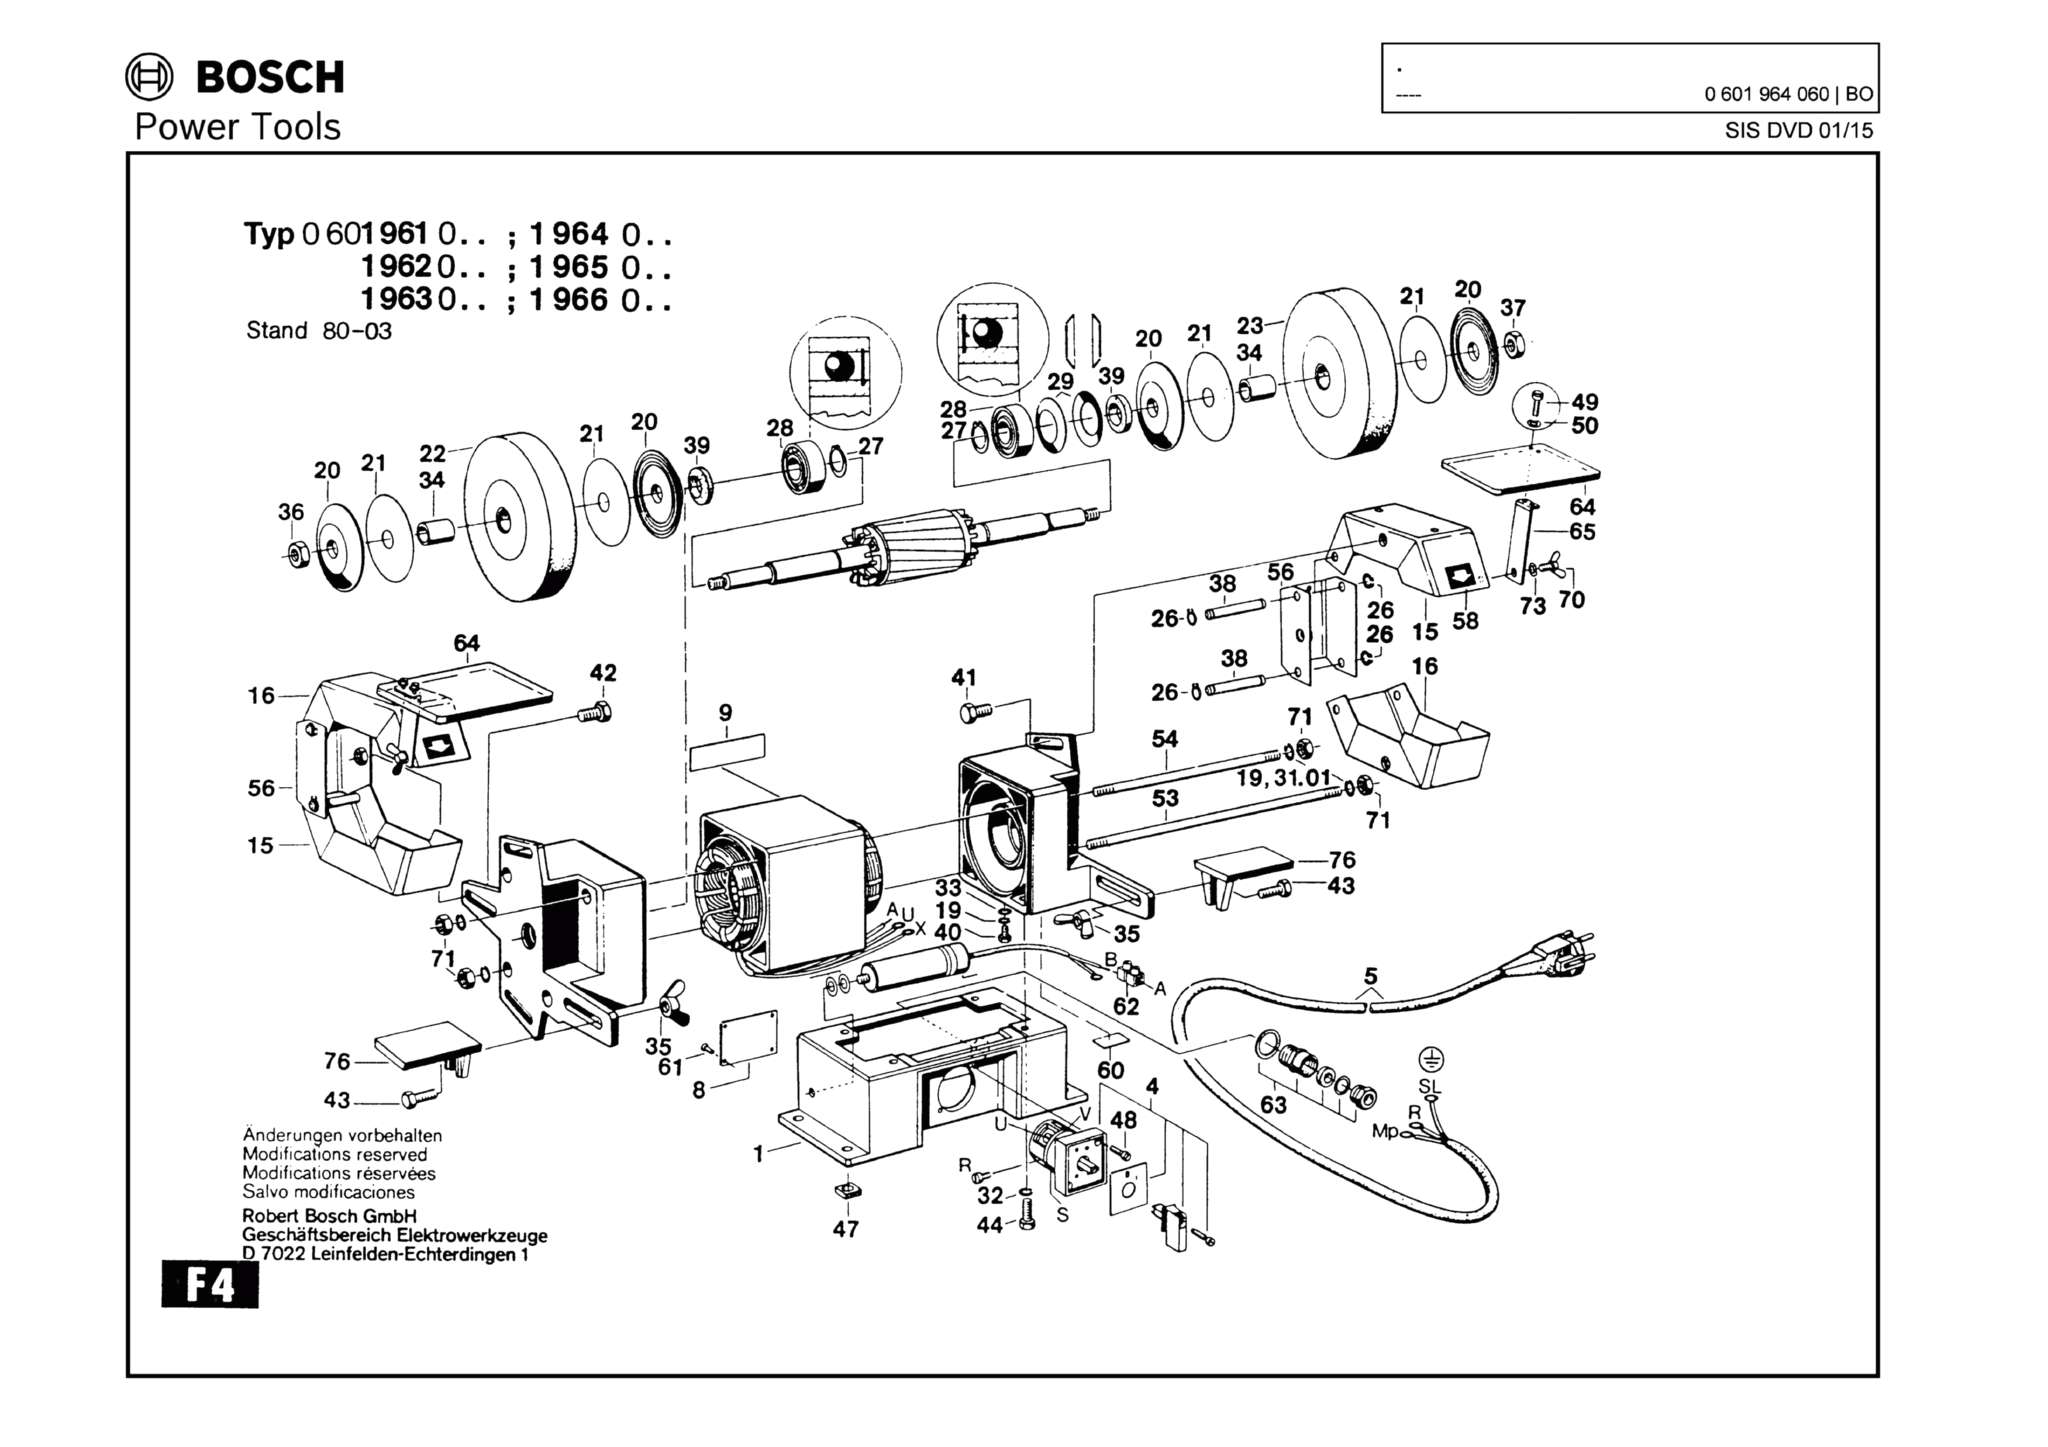 Запчасти, схема и деталировка Bosch (ТИП 0601964060)